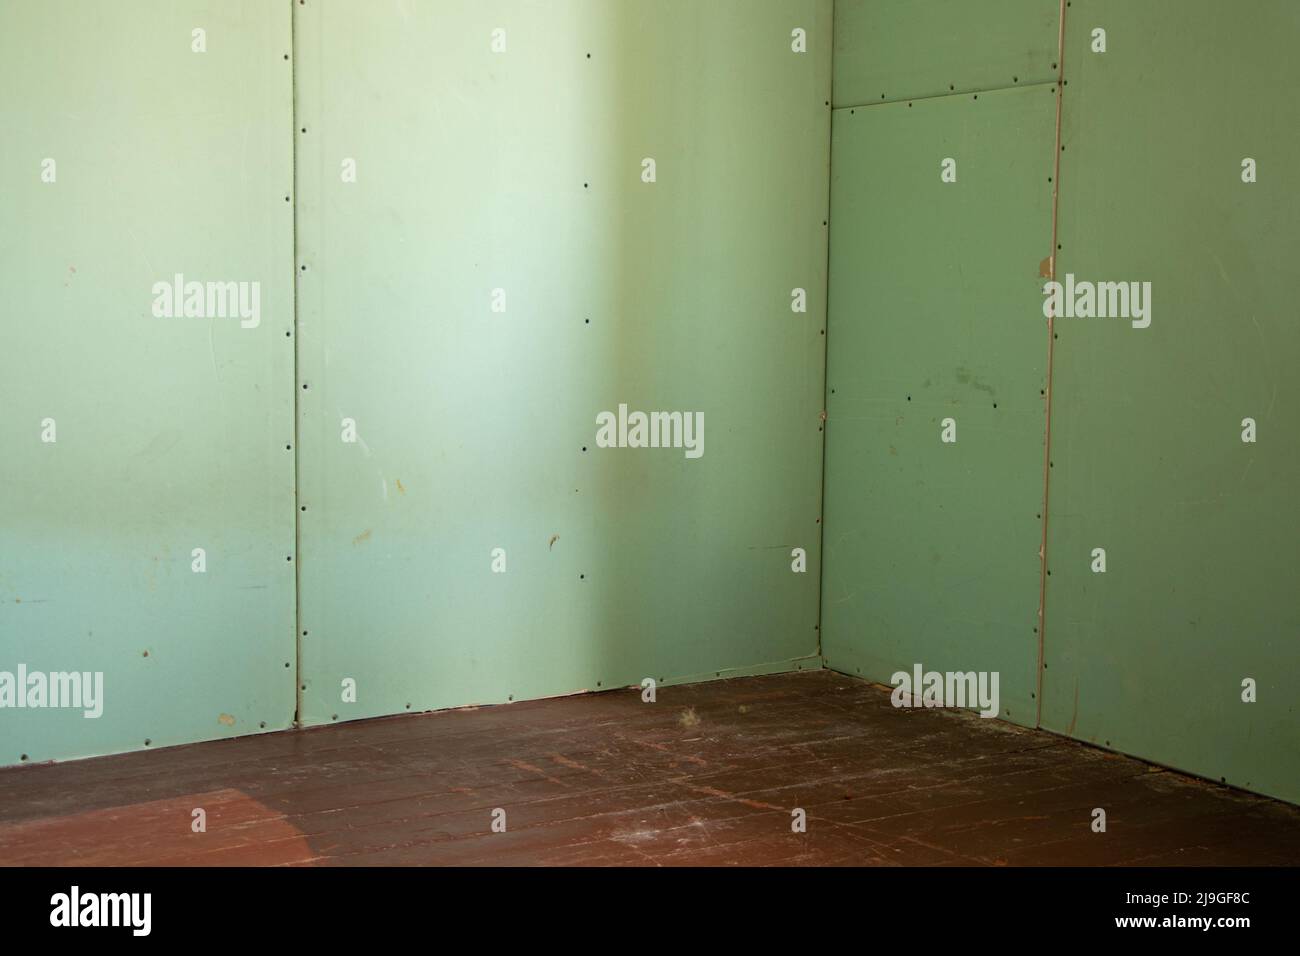 mur de placoplâtre résistant à l'humidité dans la chambre, réparation des murs de l'appartement, placoplâtre Banque D'Images